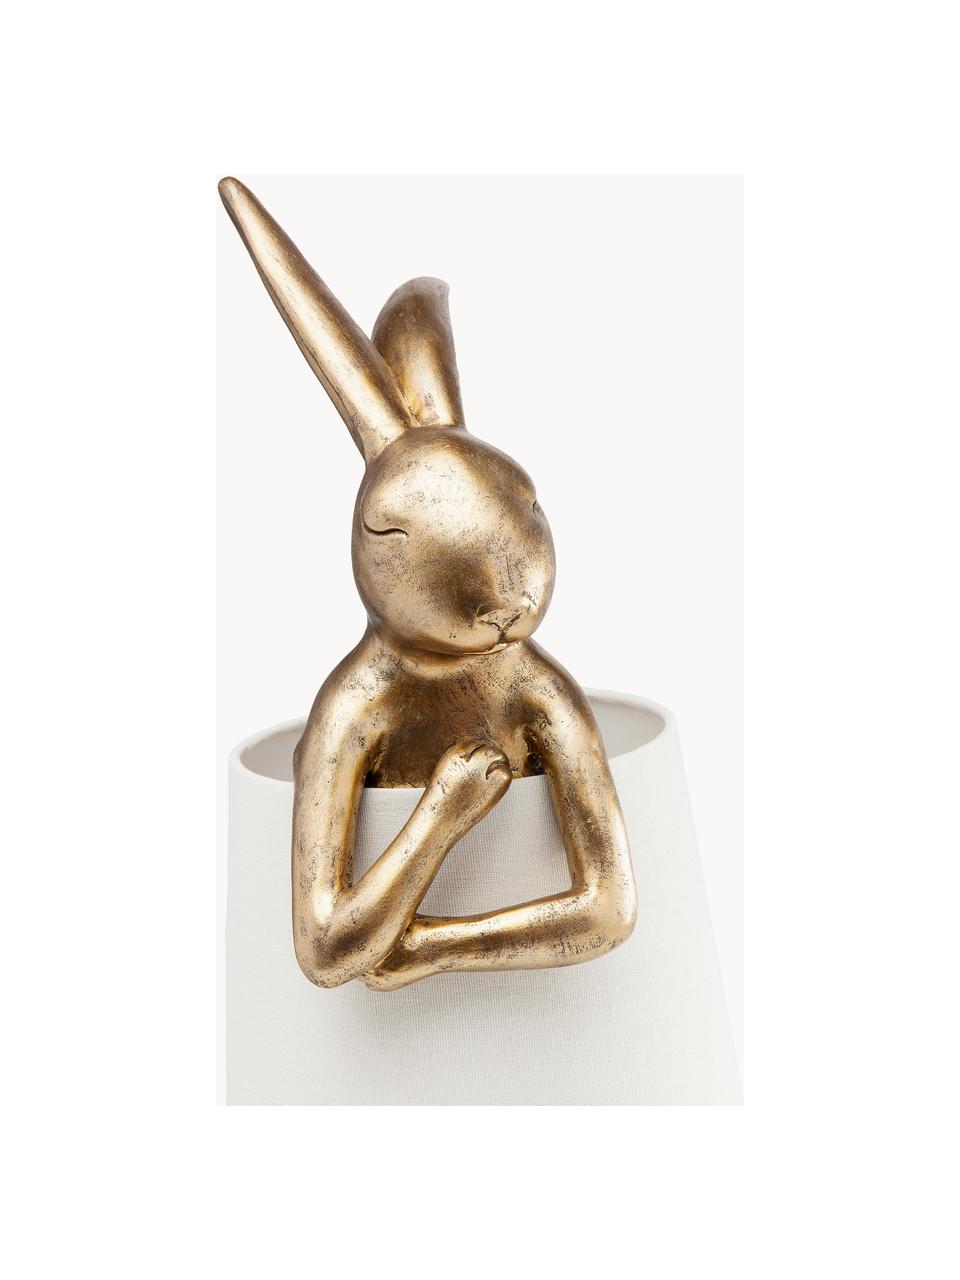 Grosse Design Tischlampe Rabbit, Lampenschirm: Leinen, Stange: Stahl, pulverbeschichtet, Weiss, Goldfarben, Ø 23 x H 68 cm